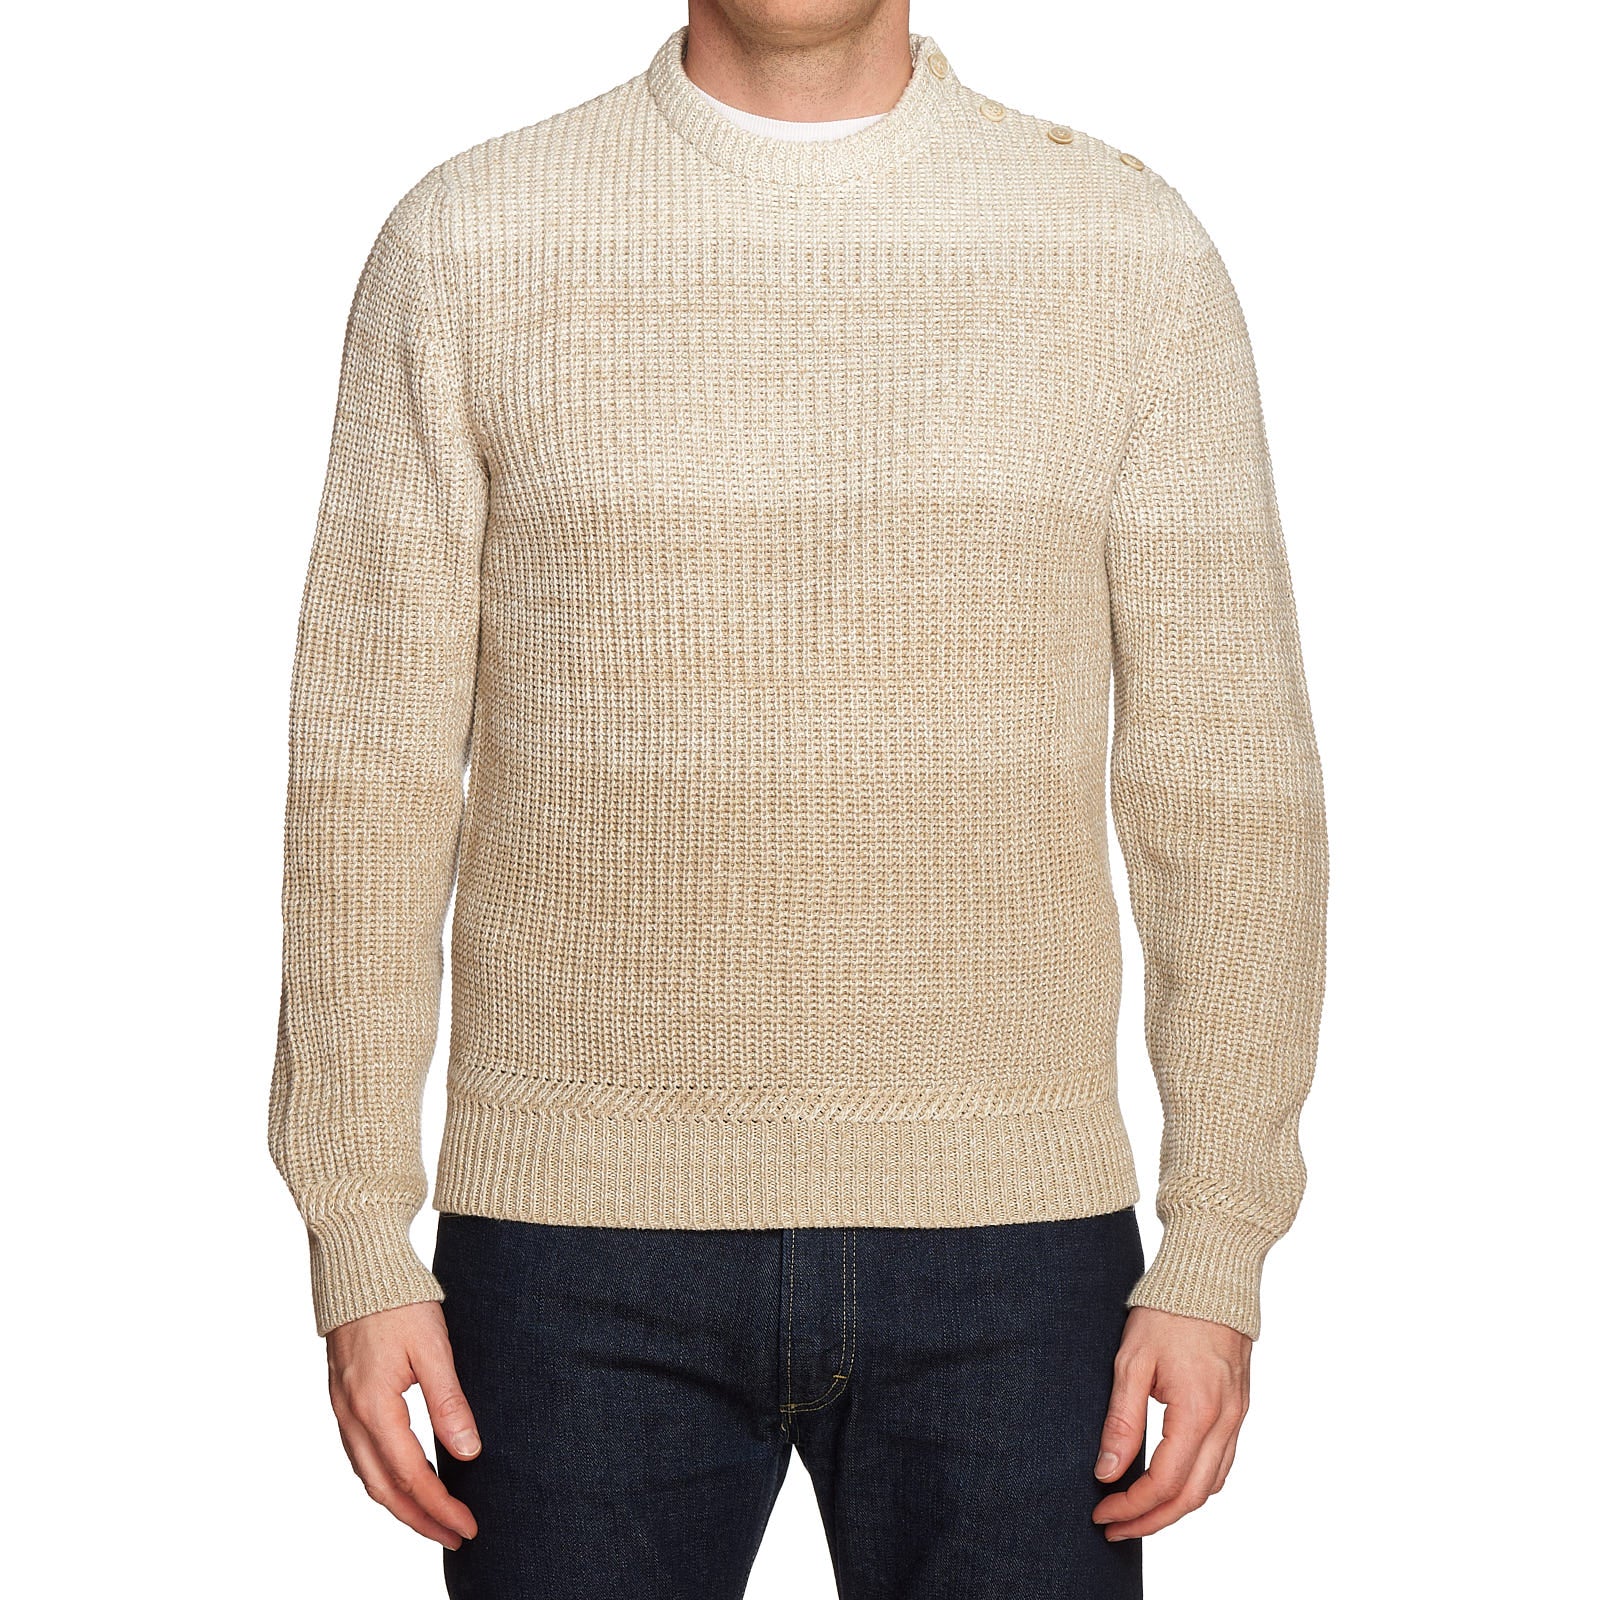 BERLUTI Paris Beige Linen-Cotton Knit Crewneck Sweater R50 NEW US M